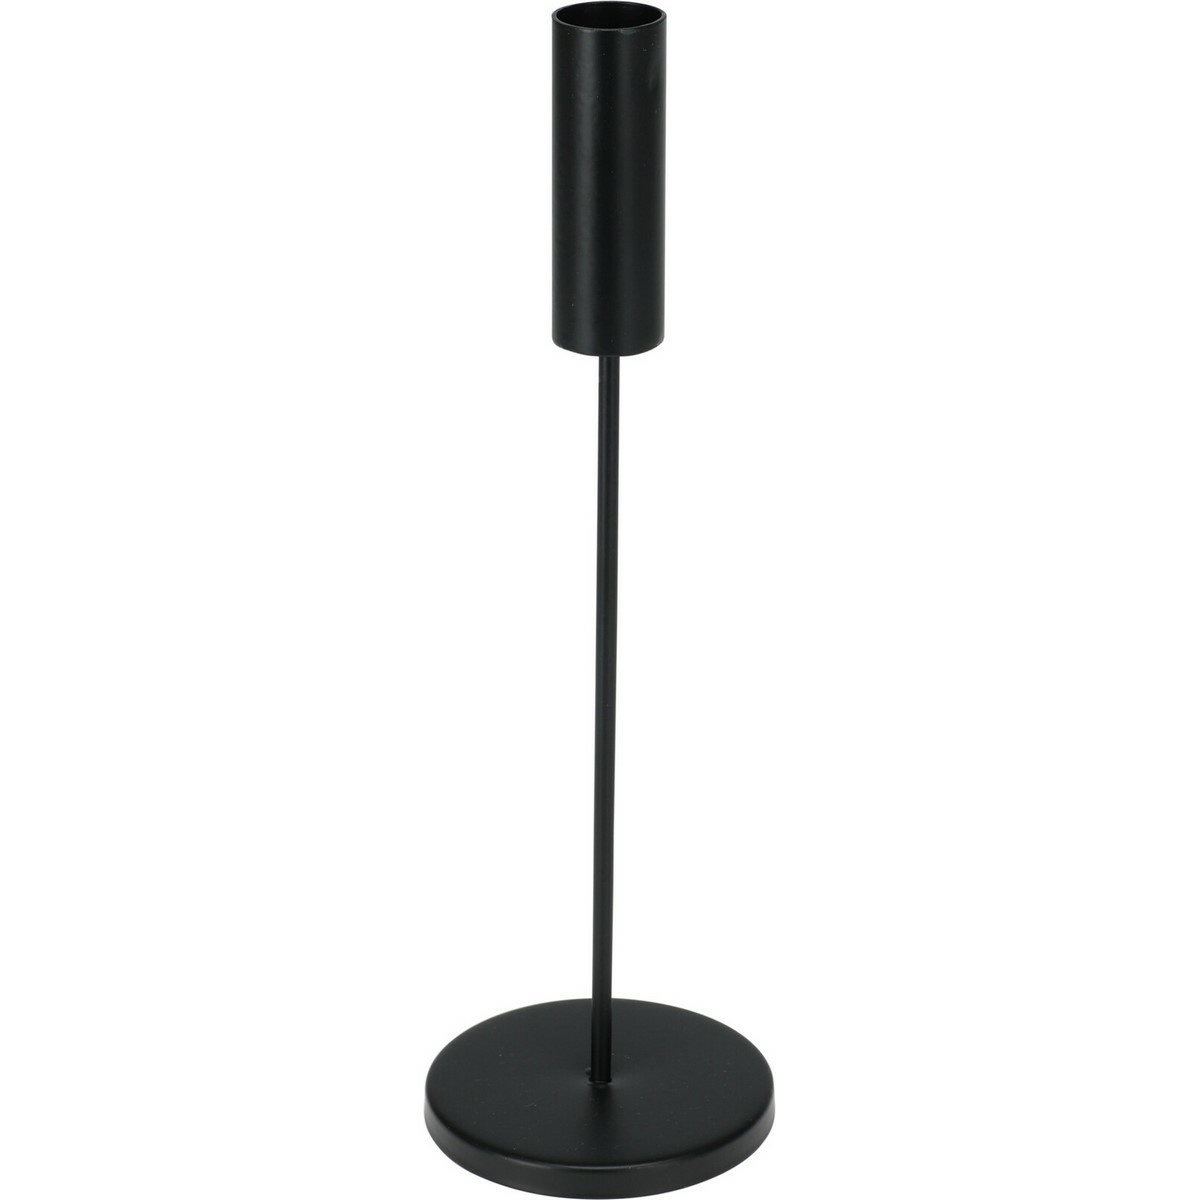 Kovový svícen Minimalist černá, 8 x 25,5 cm